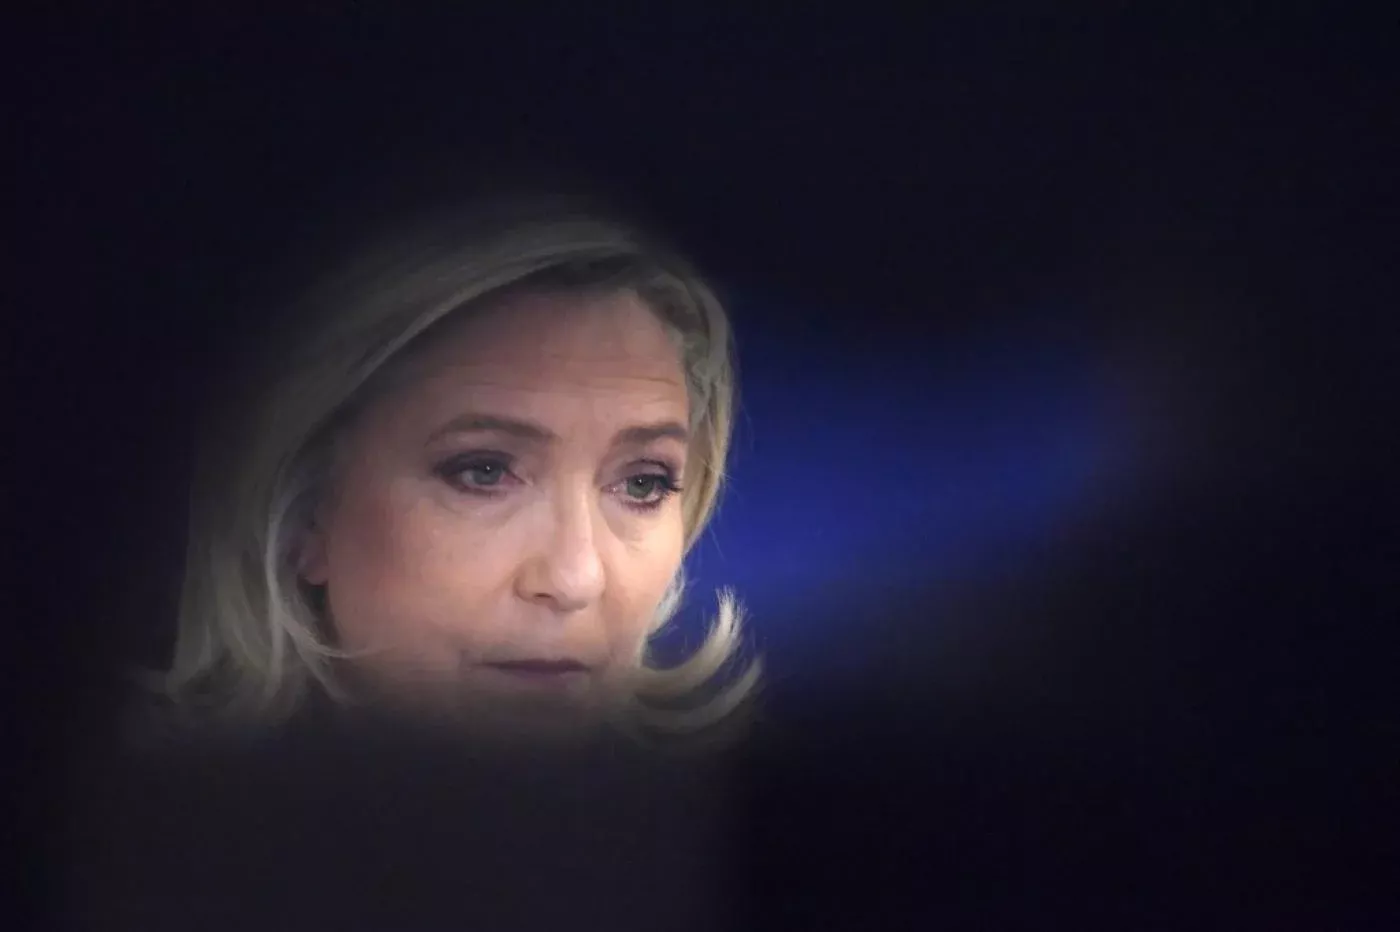 Marine Le Pen essuie sa troisième défaite mais à un niveau élevé inégalé